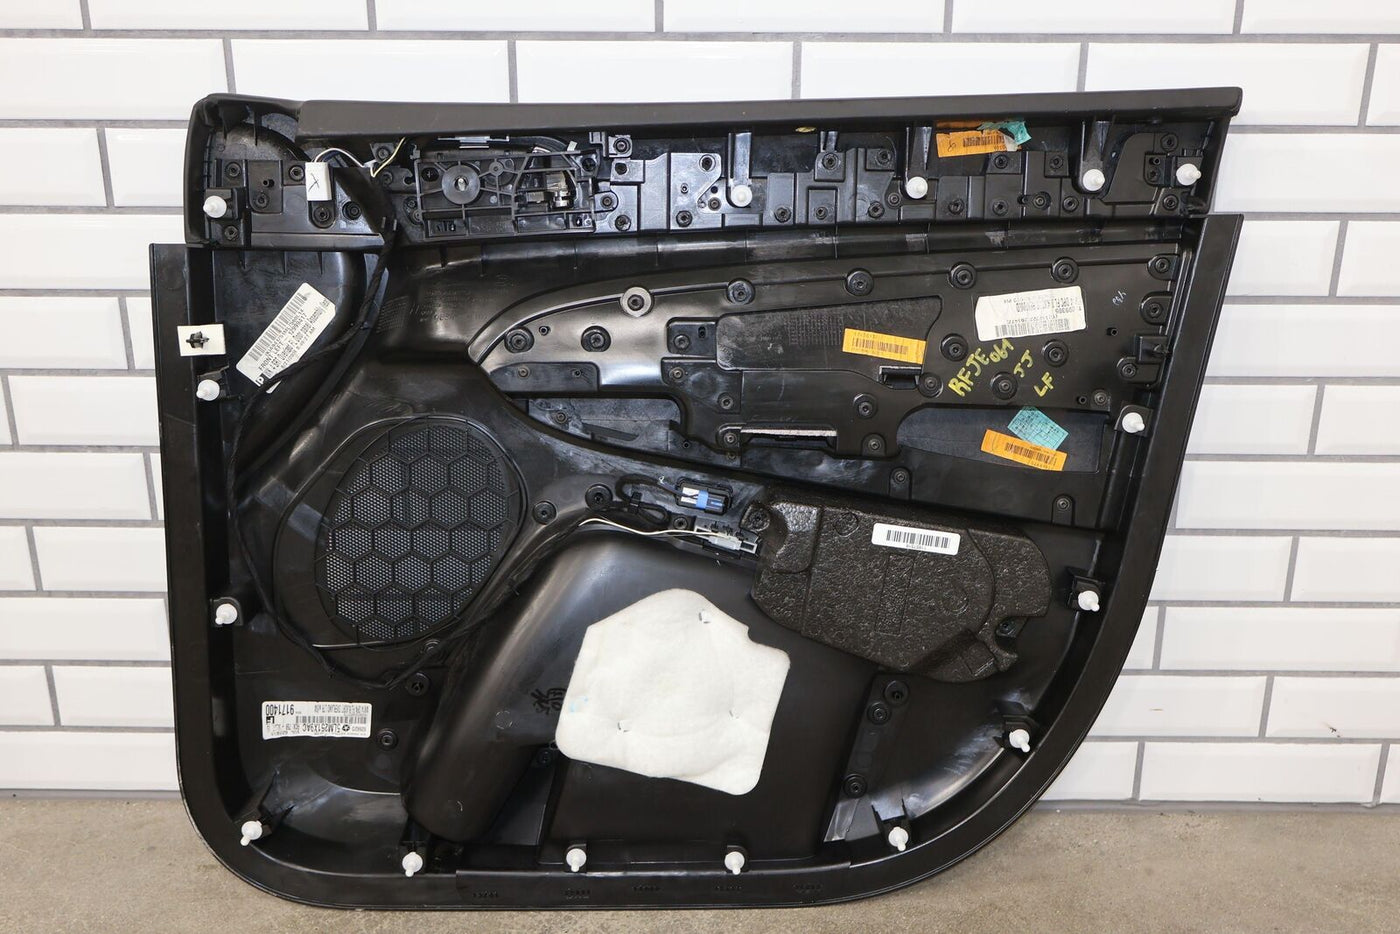 15-18 Jeep Grand Cherokee SRT8 Interior Door Trim Panels Set of 4 -Black/Carbon